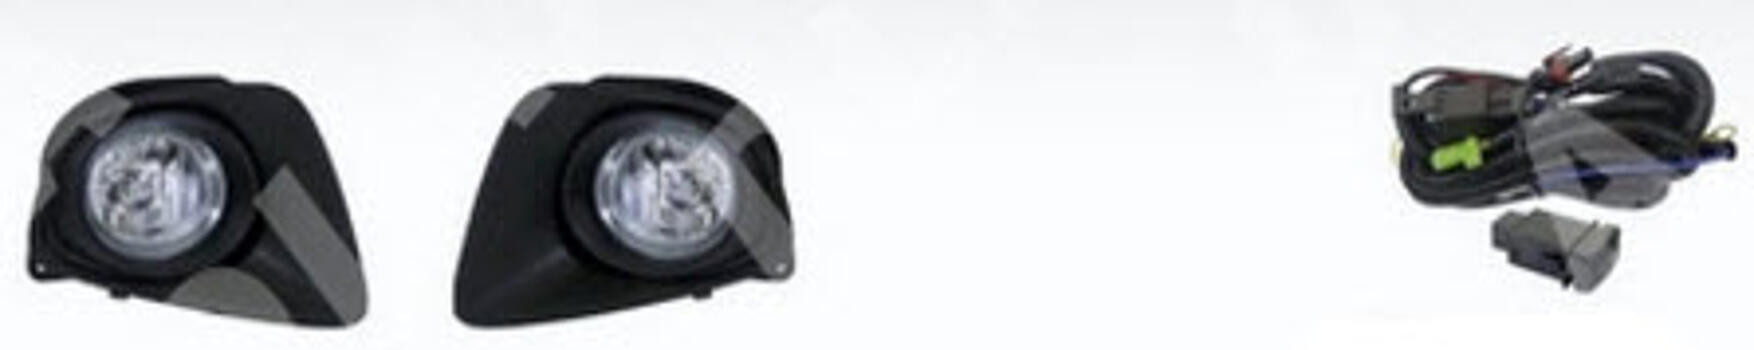 Противотуманные фары ПТФ с проводкой, кнопкой и решетками в бампер MAZDA 2 07-09 MZX0207-071-N 